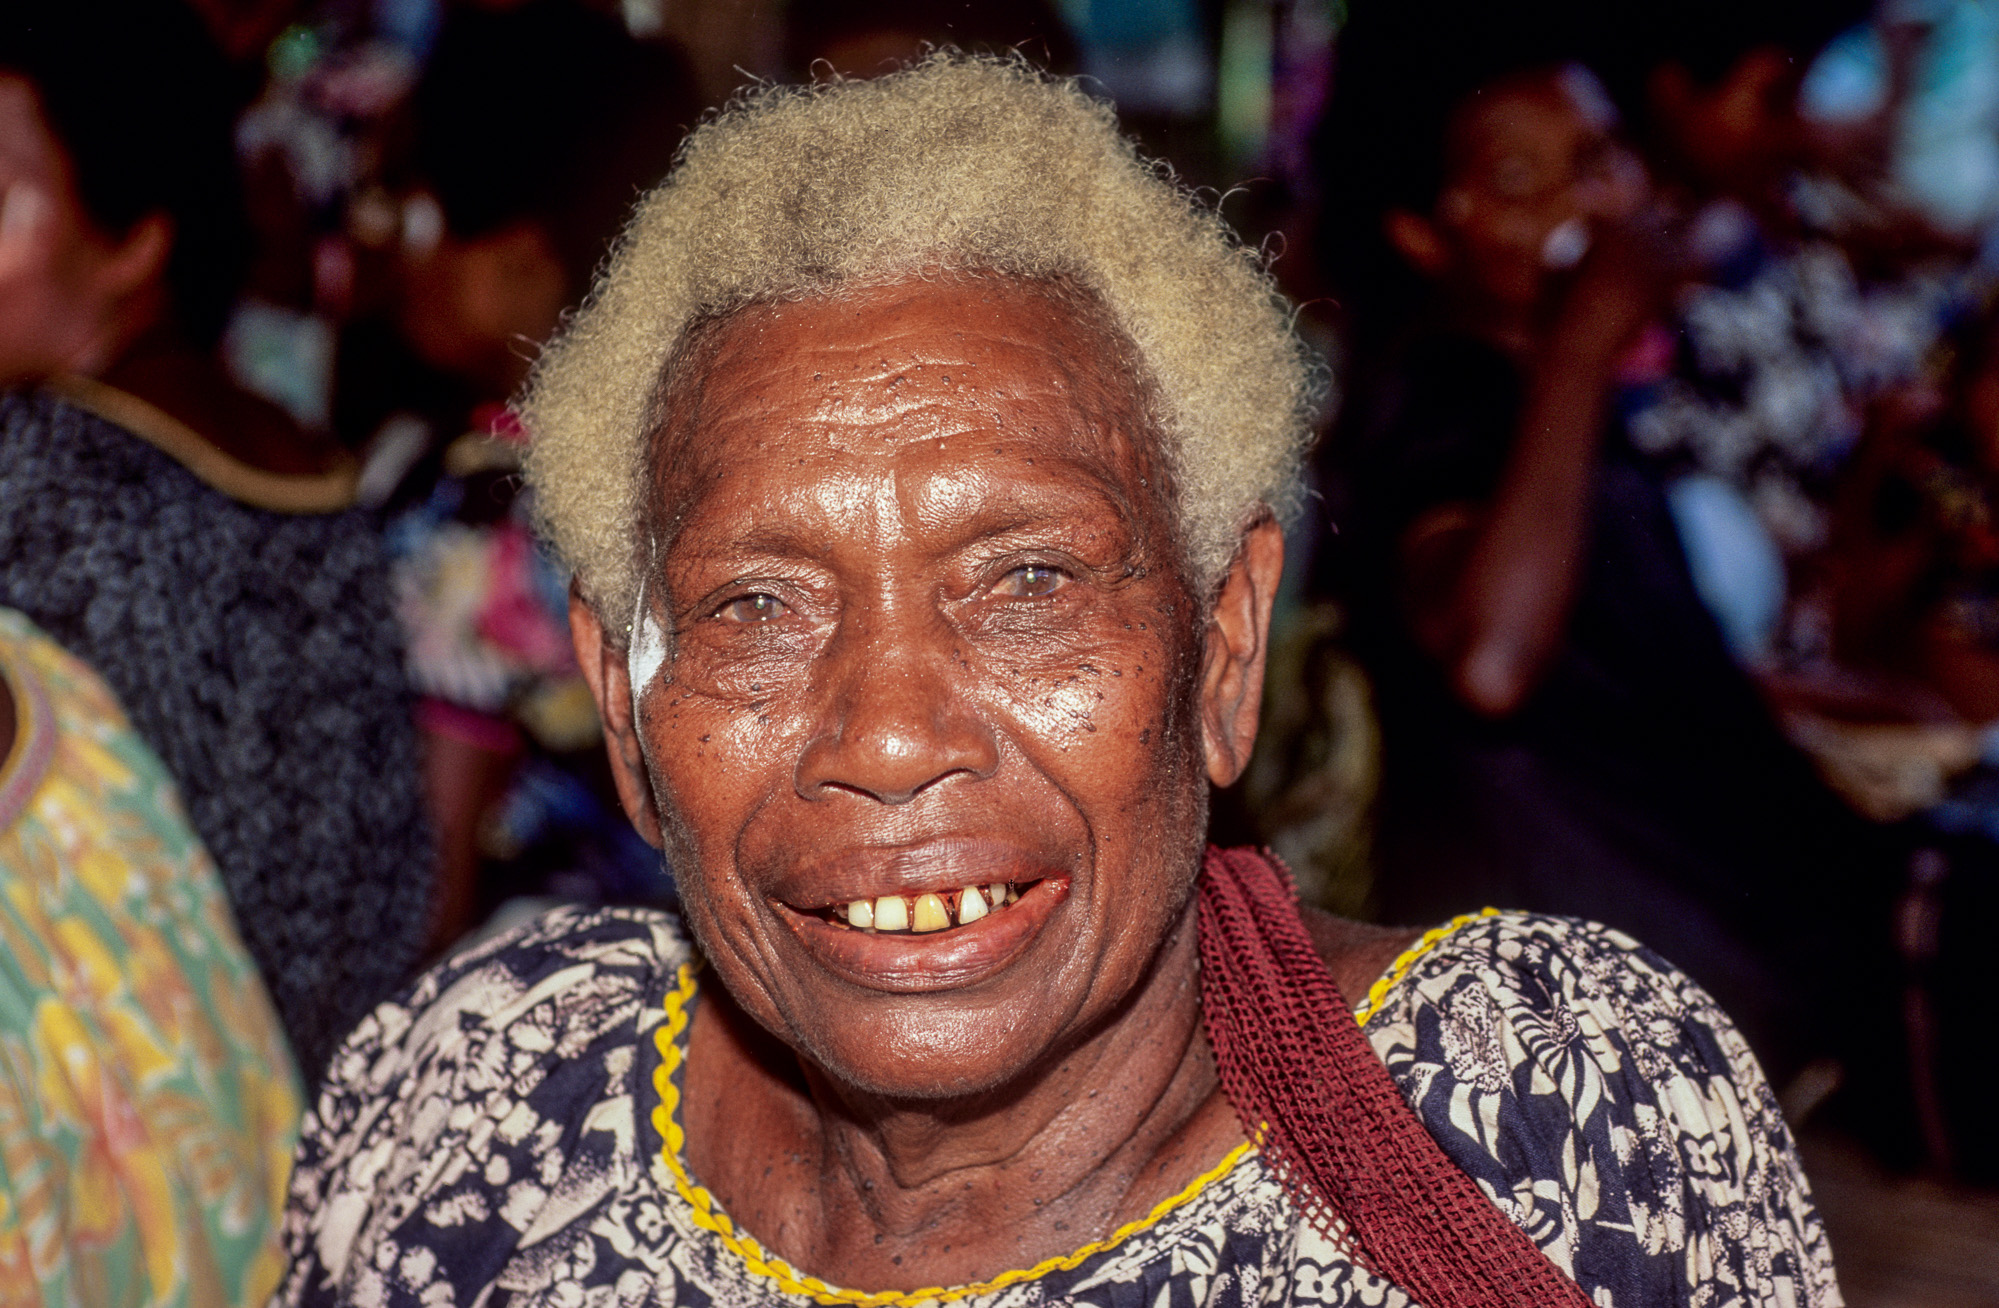 Nouvelle Guinée Papouasie. Rabaul, tribu des Tolaï. Beaucoup d'habitants sont blonds, à cause de la malnutrition qui sévit dans ses contrées perdues.